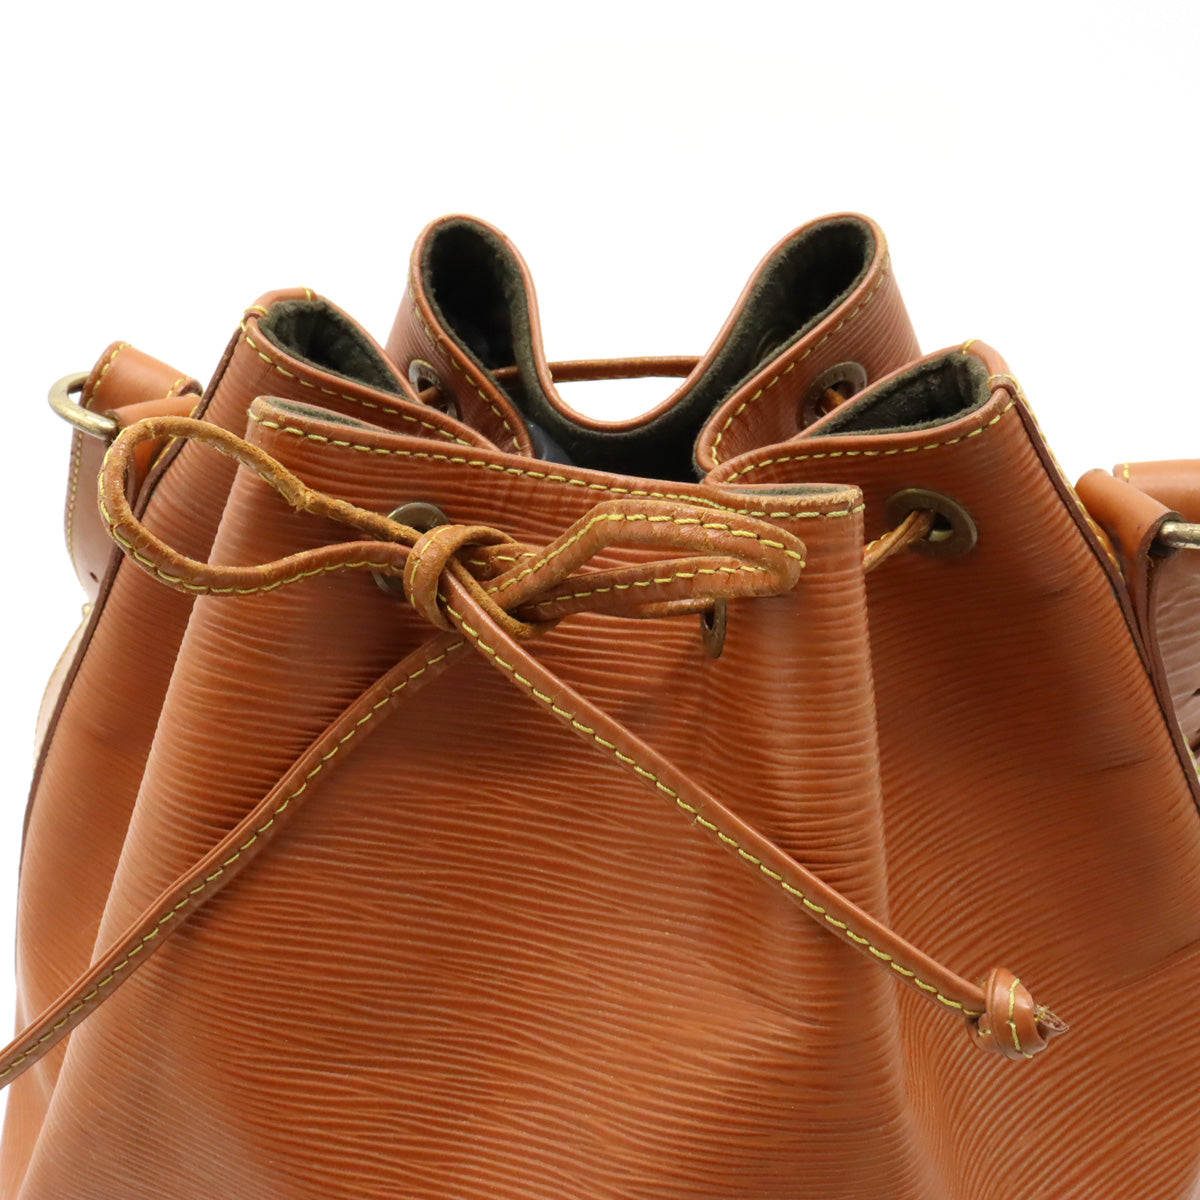 Louis Vuitton Epi Noe 單肩包 棕色 M44108